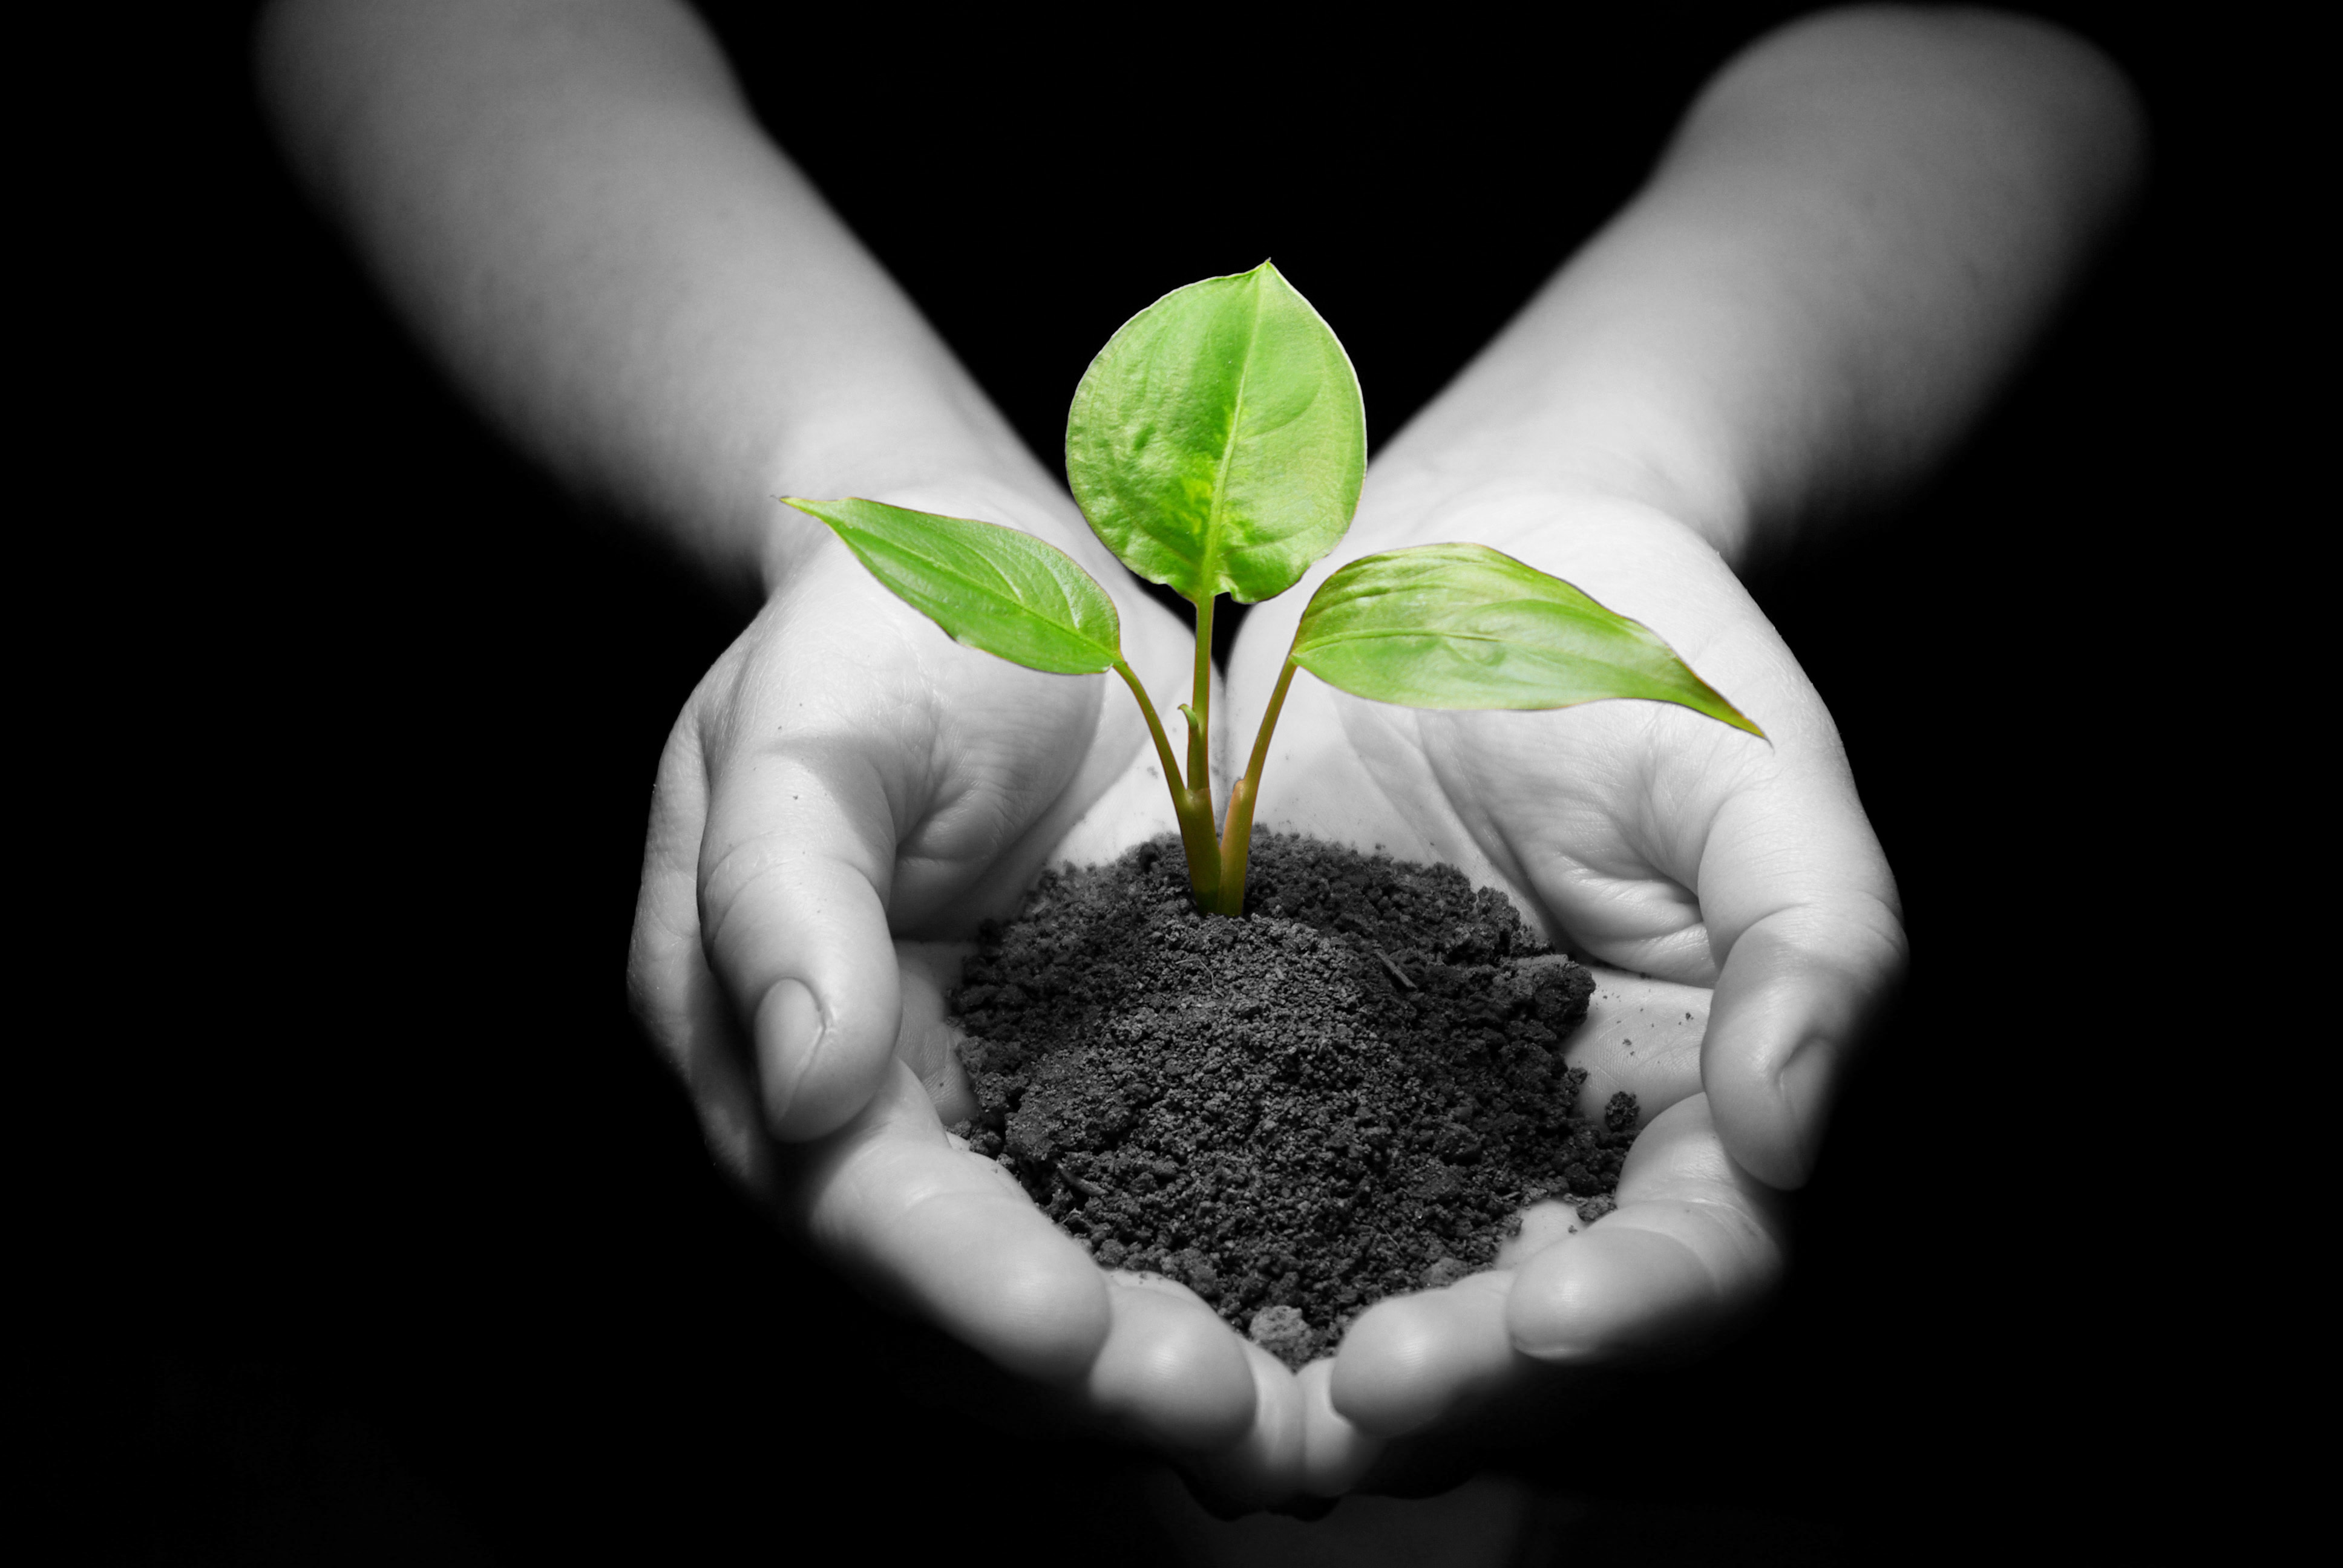 Рациональное использование экология. Растение в руках. Почва. Экология почвы. Росток в руках.